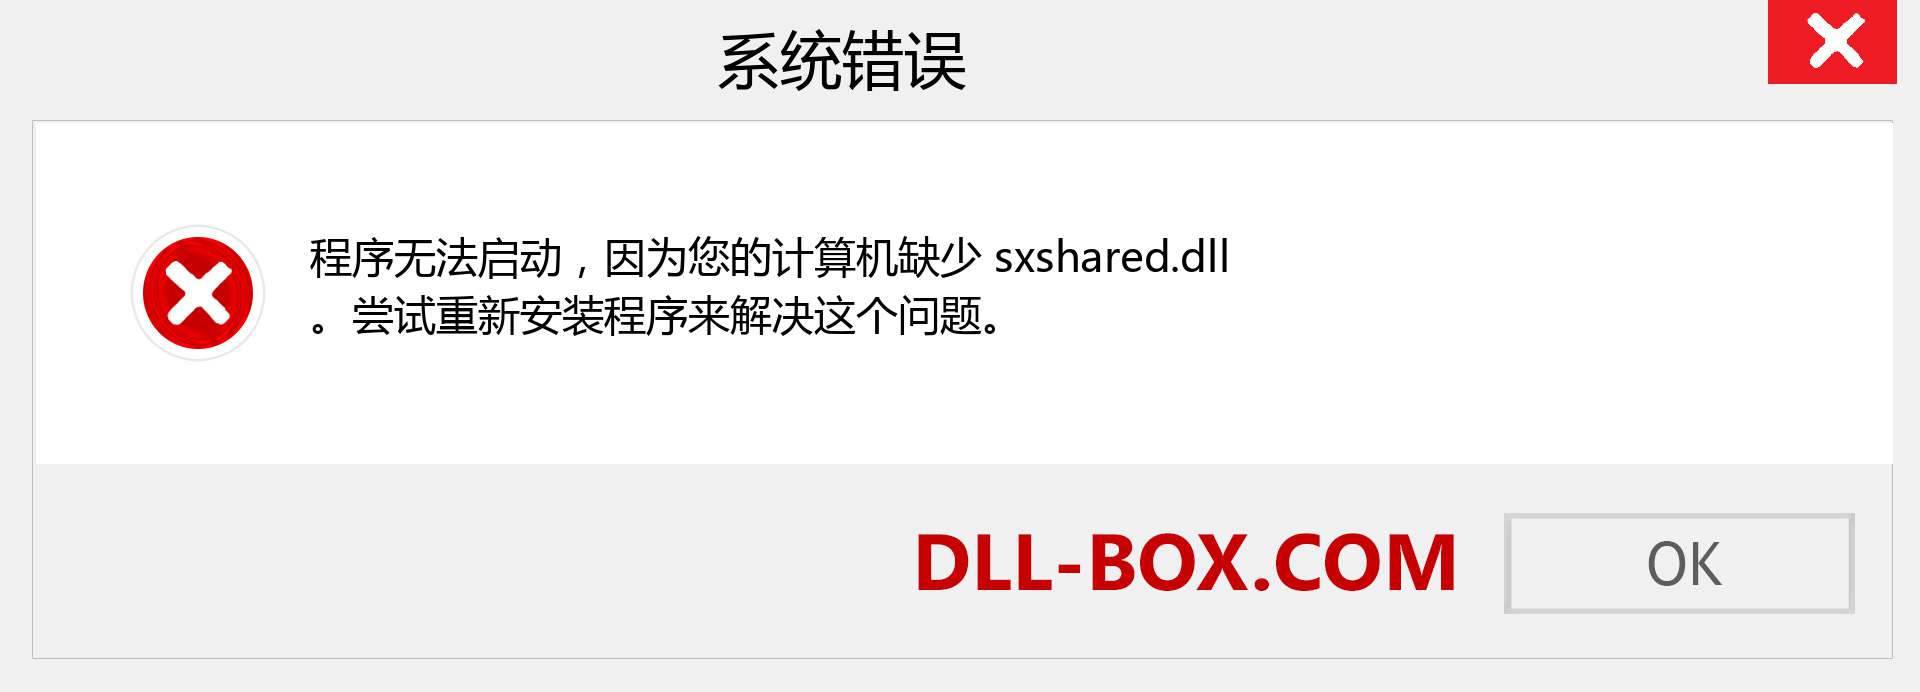 sxshared.dll 文件丢失？。 适用于 Windows 7、8、10 的下载 - 修复 Windows、照片、图像上的 sxshared dll 丢失错误